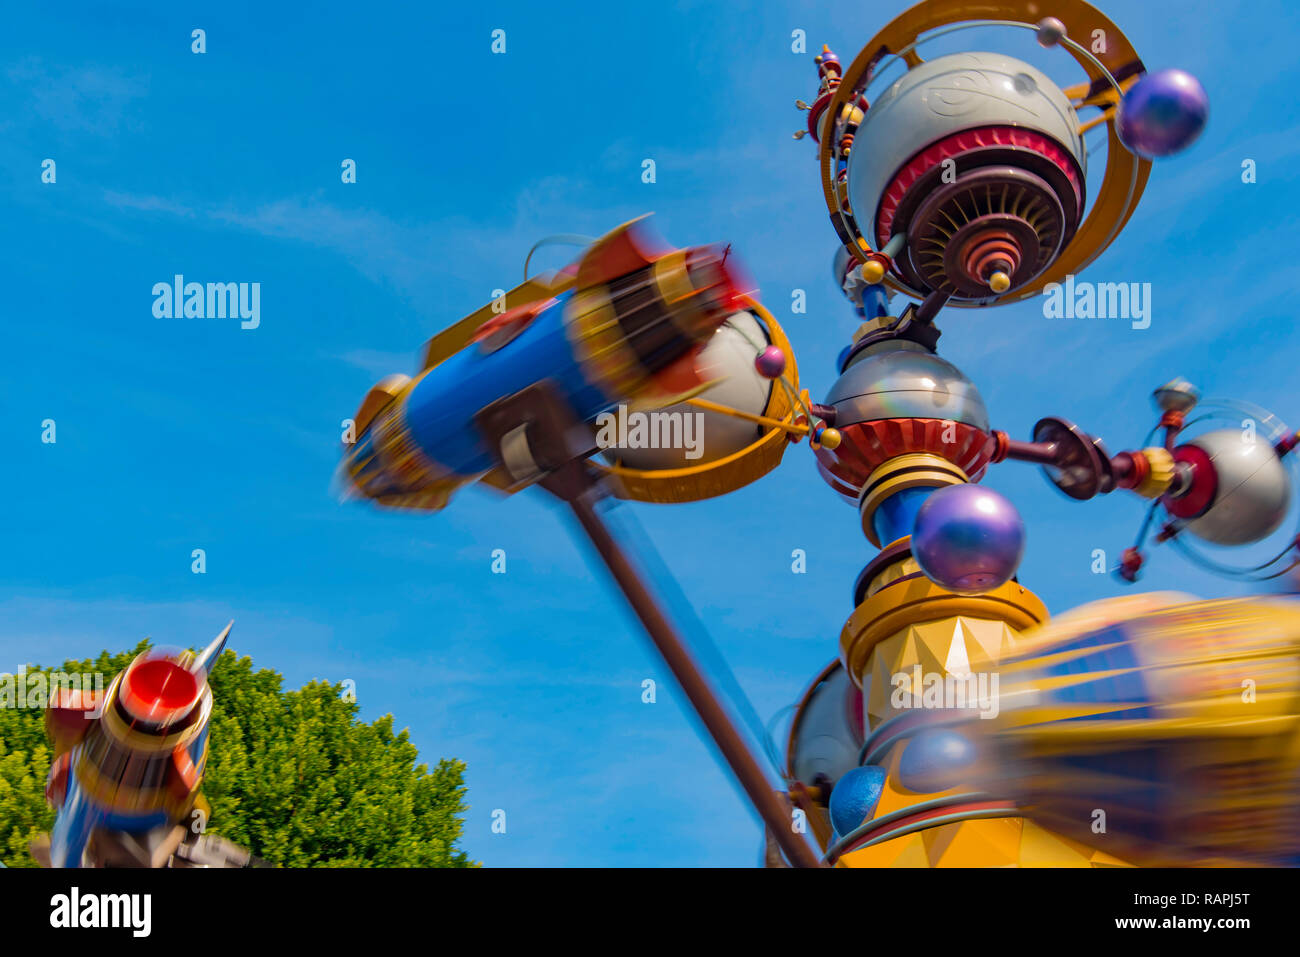 The Orbitron eine Rakete-Spinner-Fahrt in Aktion im Disneyland Anaheim, LA, Los Angeles in Kalifornien, USA, Vereinigte Staaten von Amerika Stockfoto